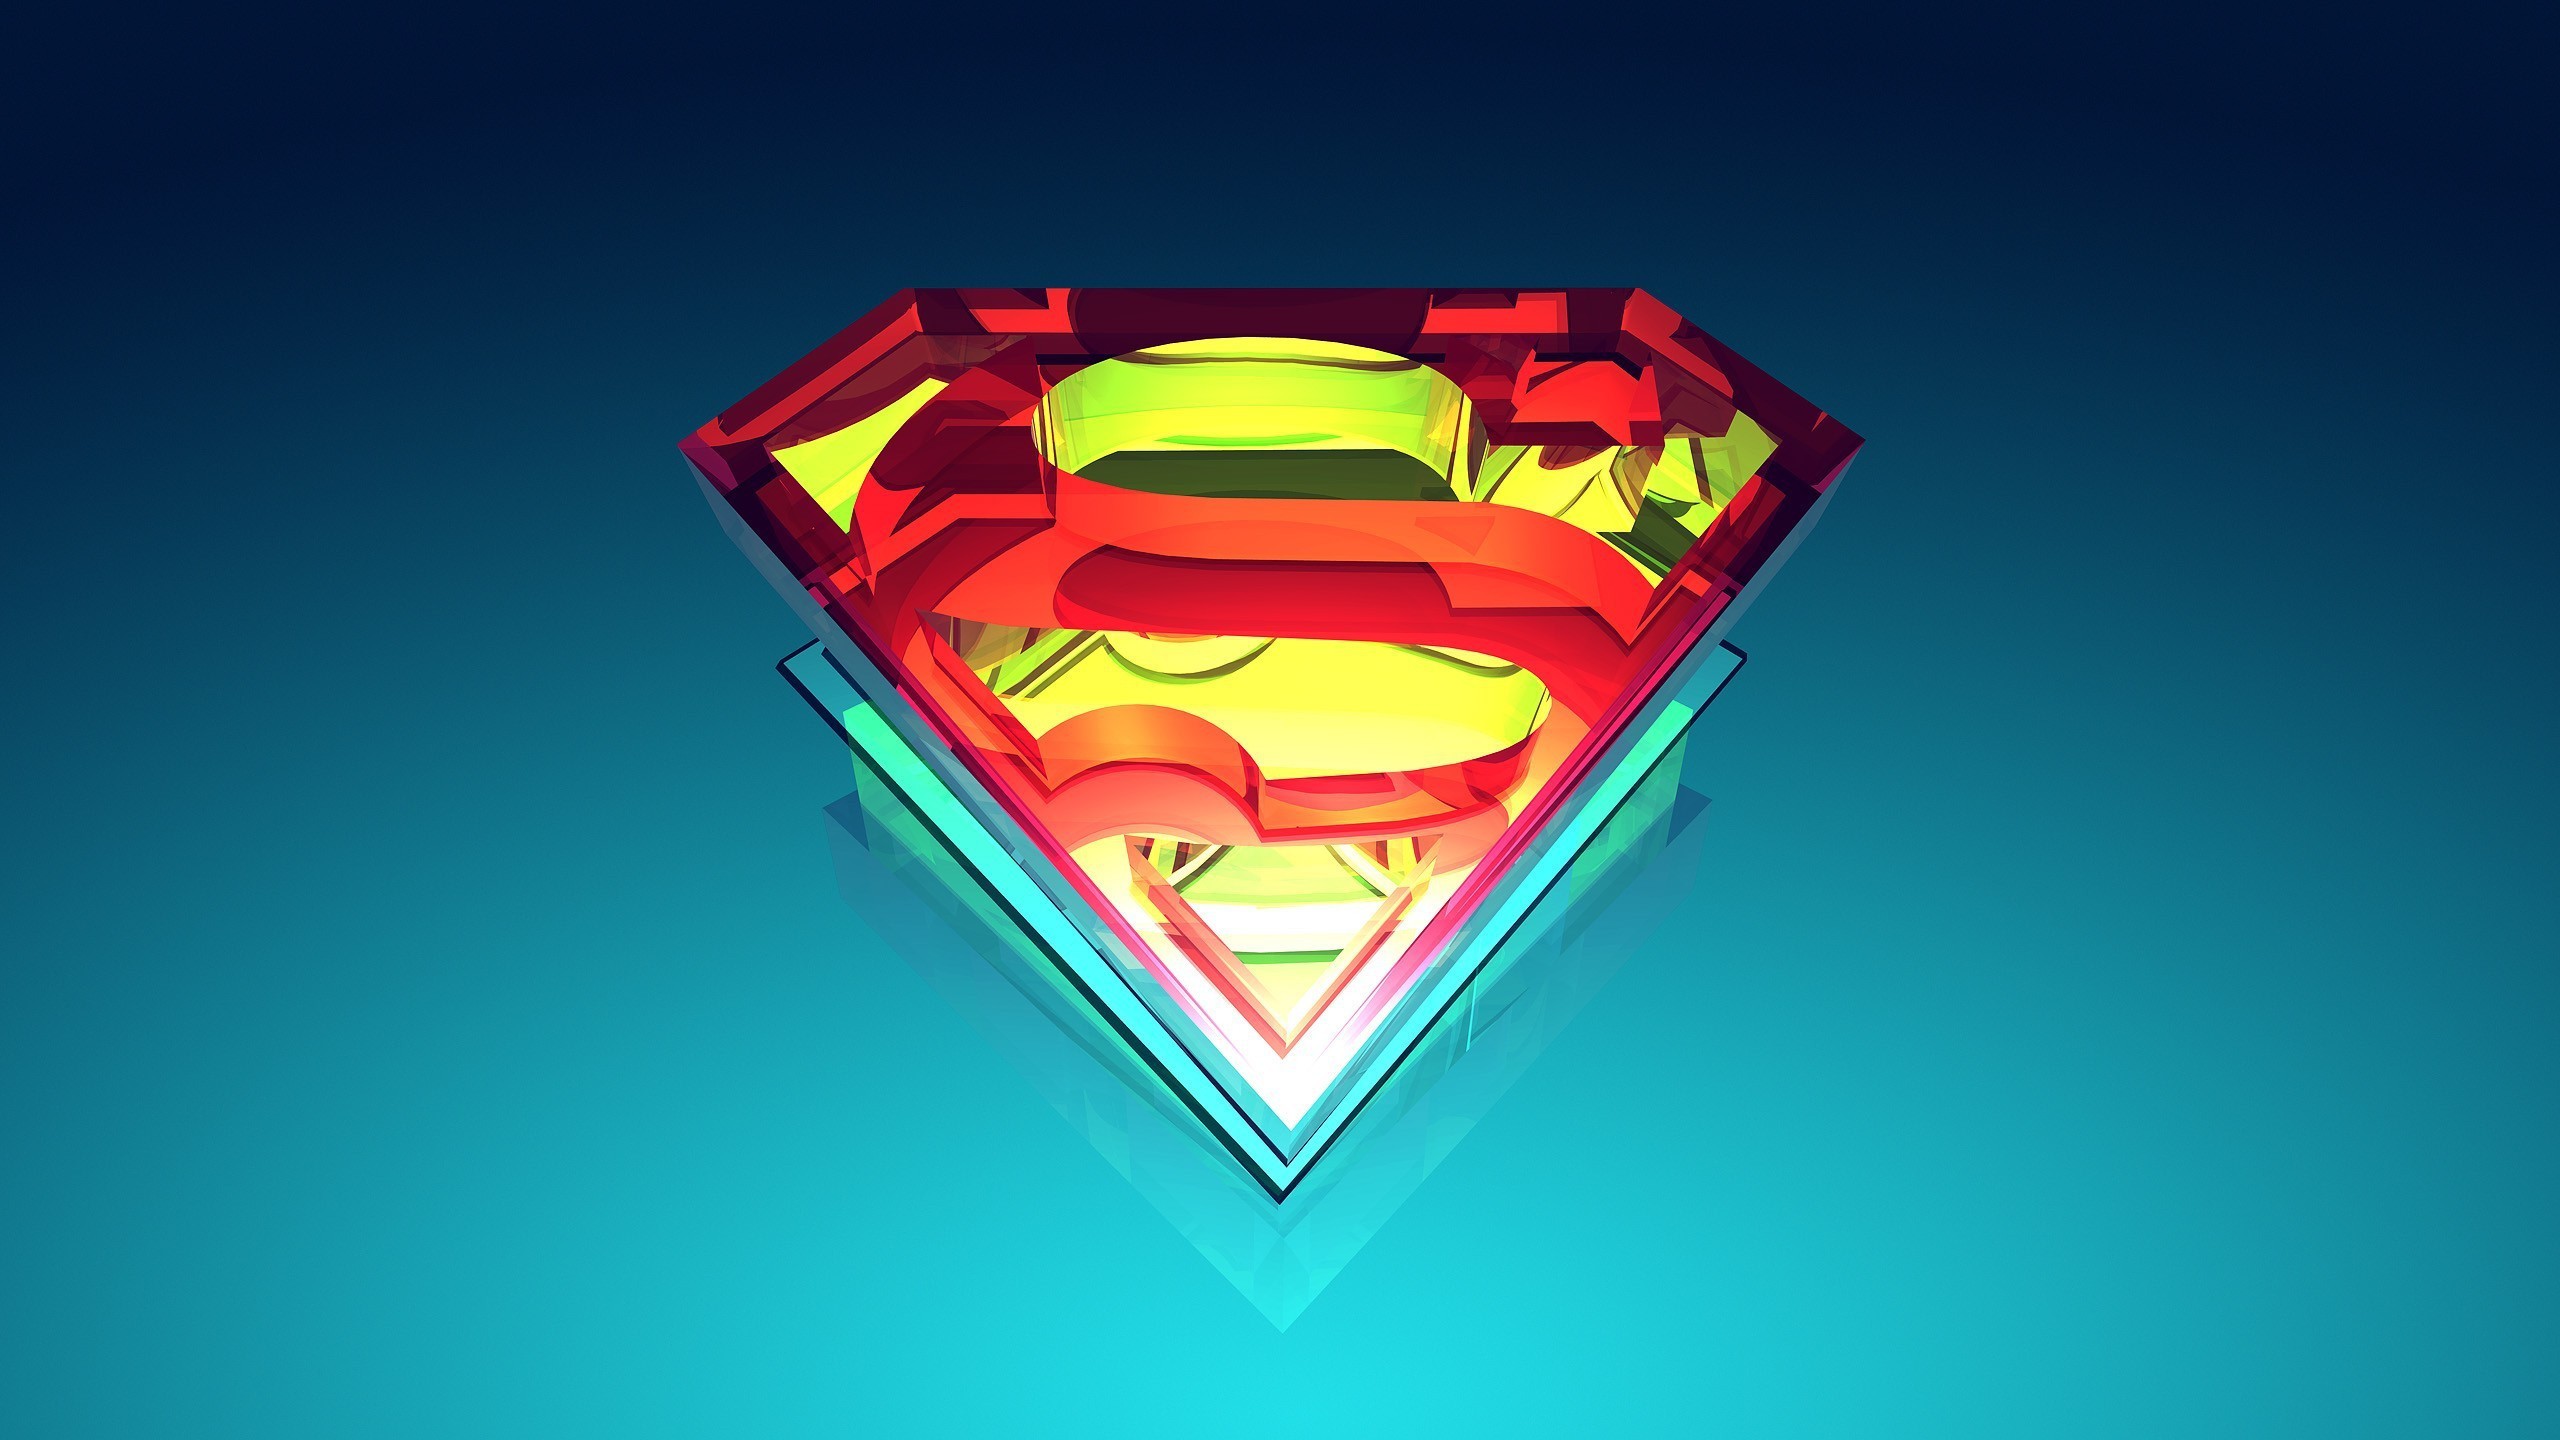 2560x1440 Justin maller superman logo digital art vectors (, maller,  superman, logo,